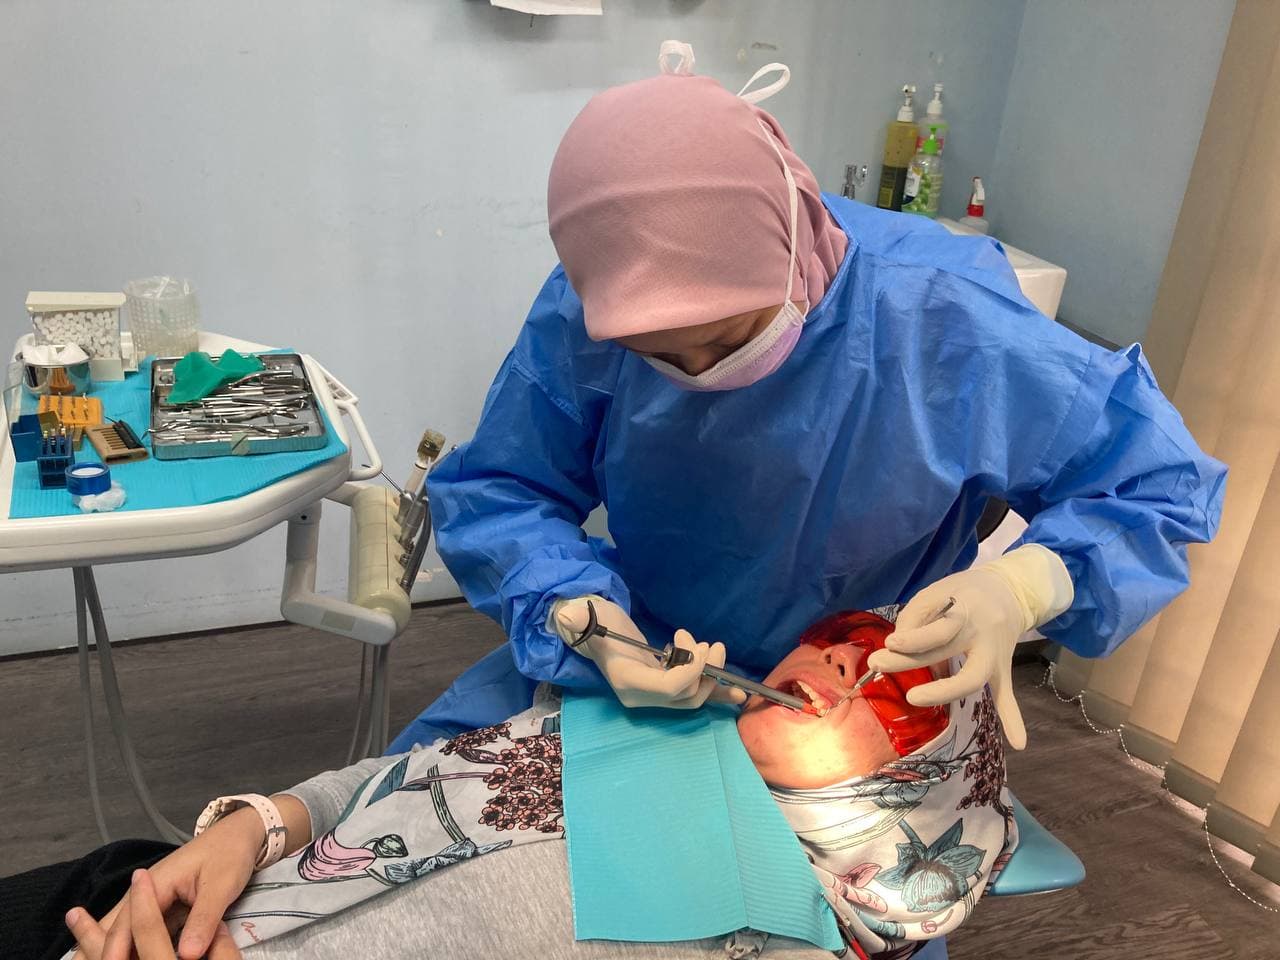 Pengalaman Buat Rawatan Root Canal Rawatan Akar Gigi Di Klinik Pergigian Bangsar Utama Azwar Syuhada